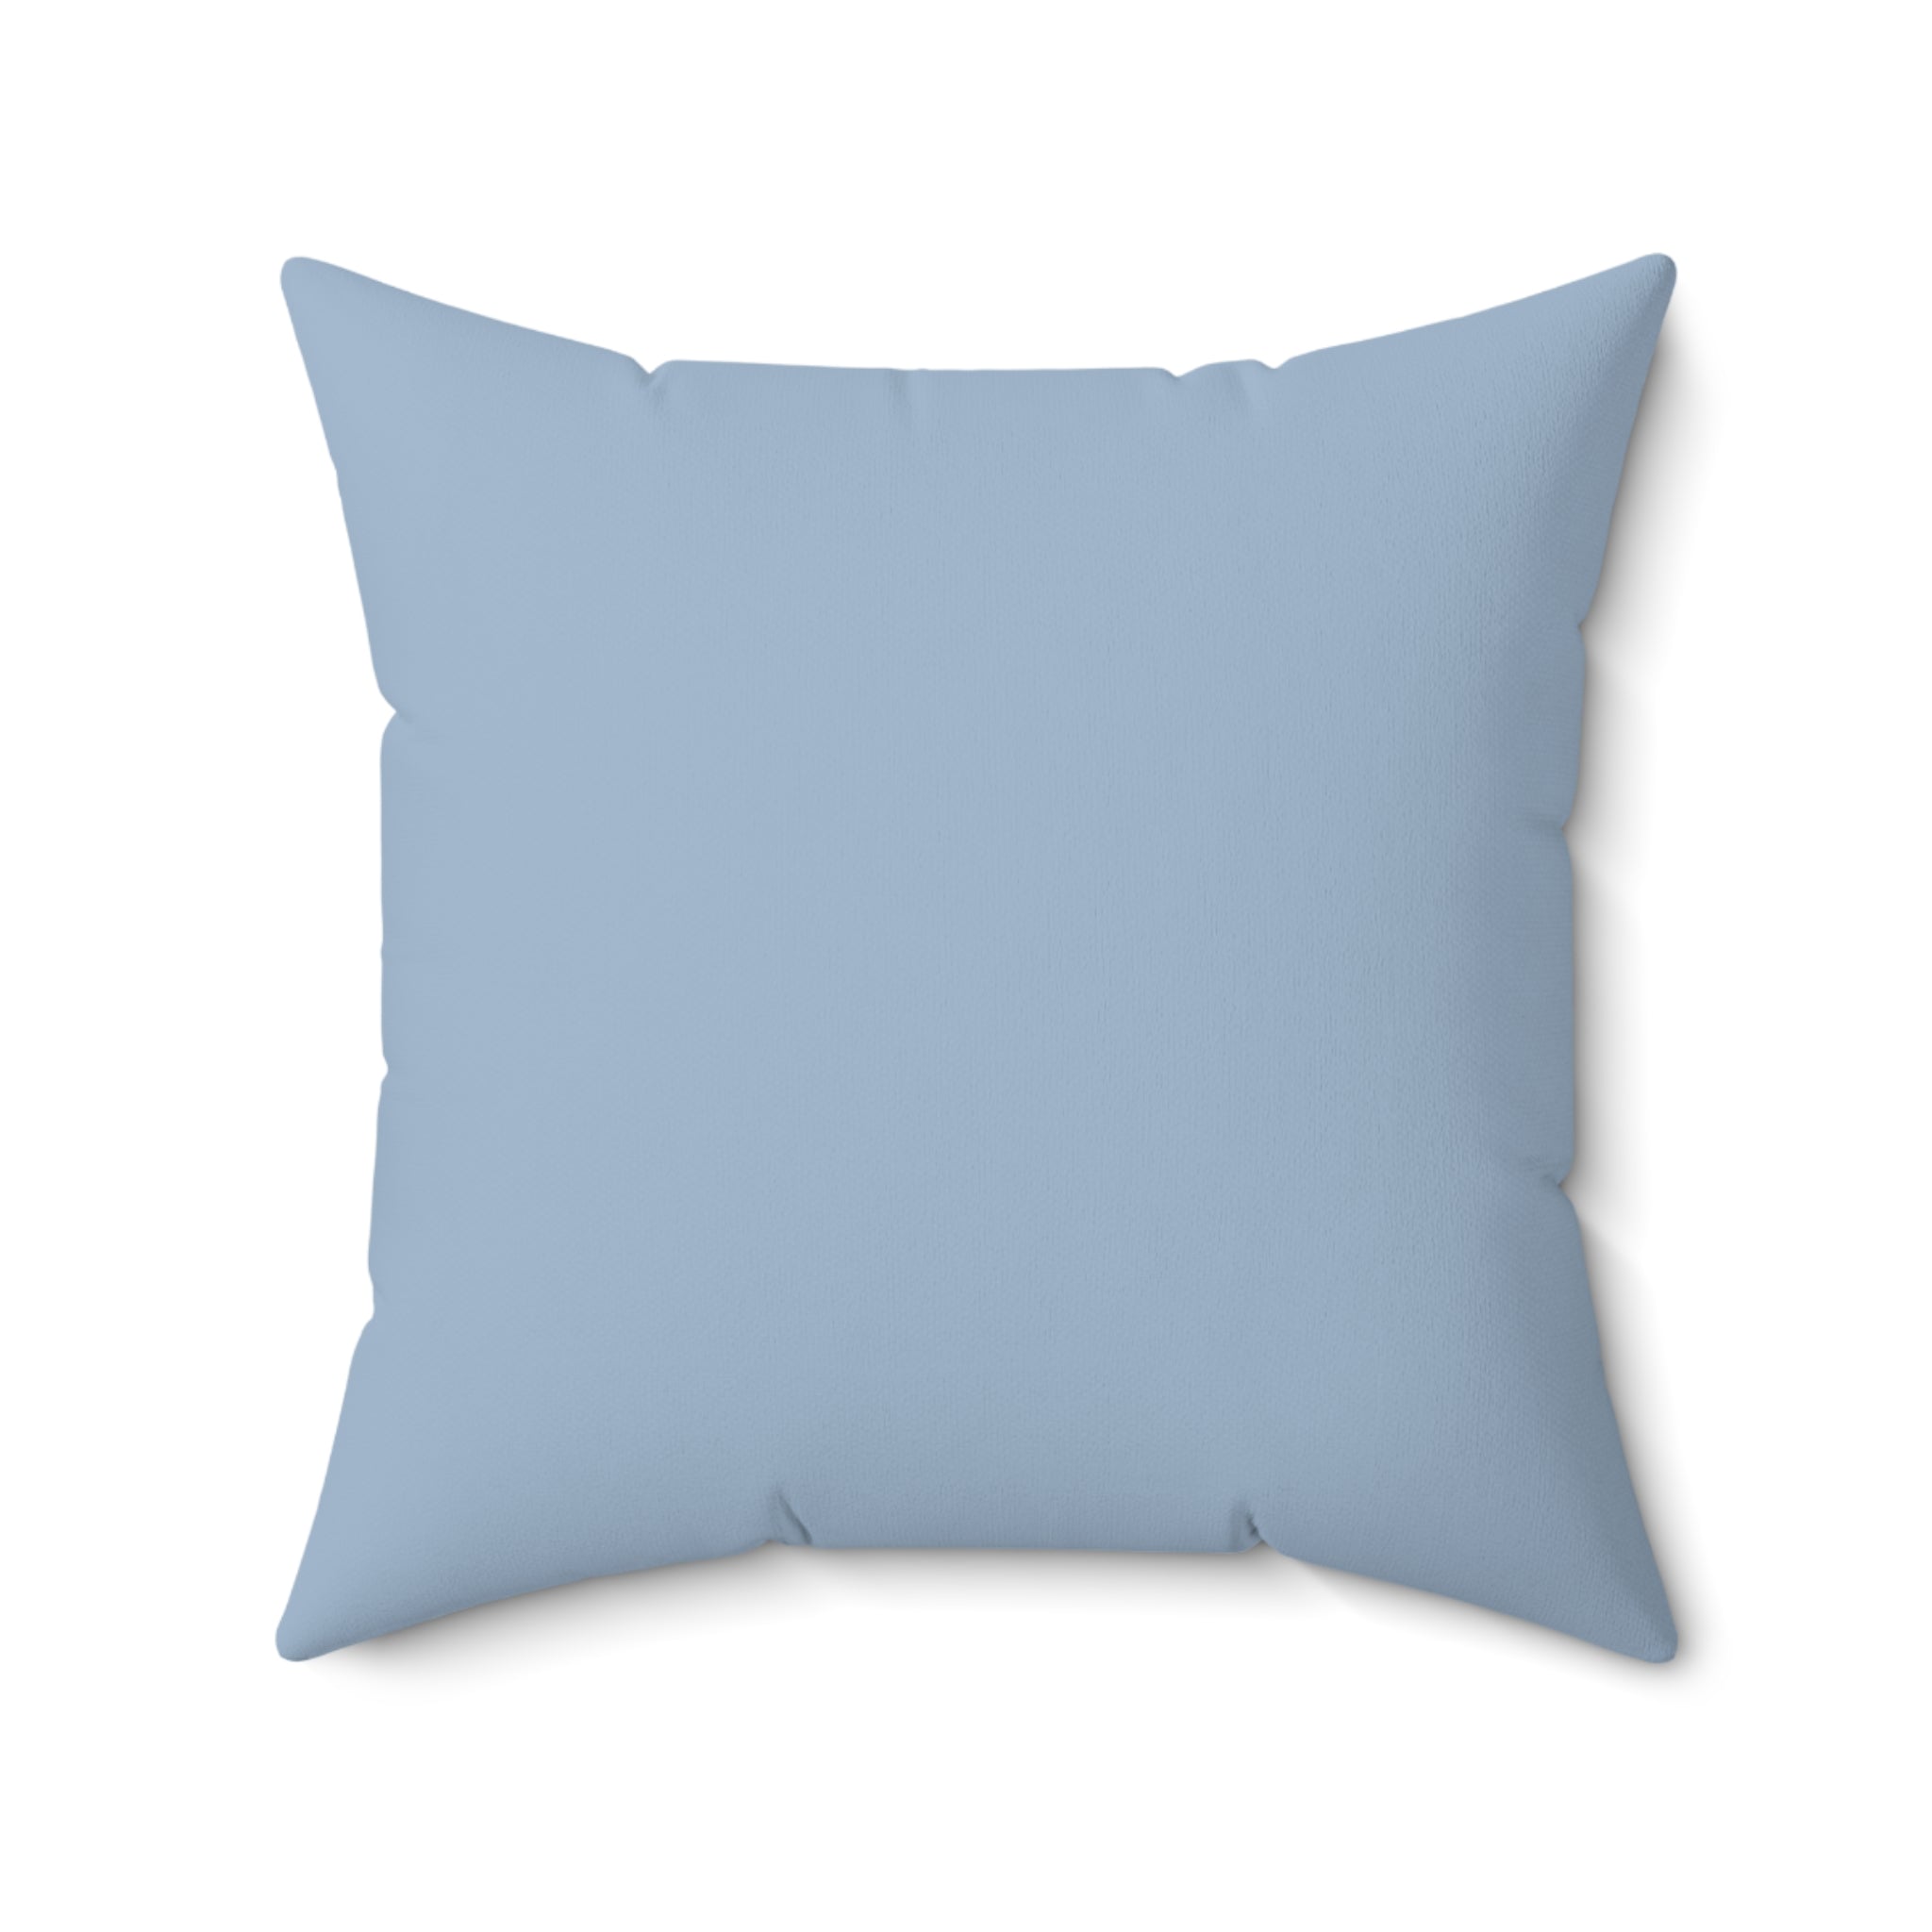 Faux Suede Pillow - Blue Mist